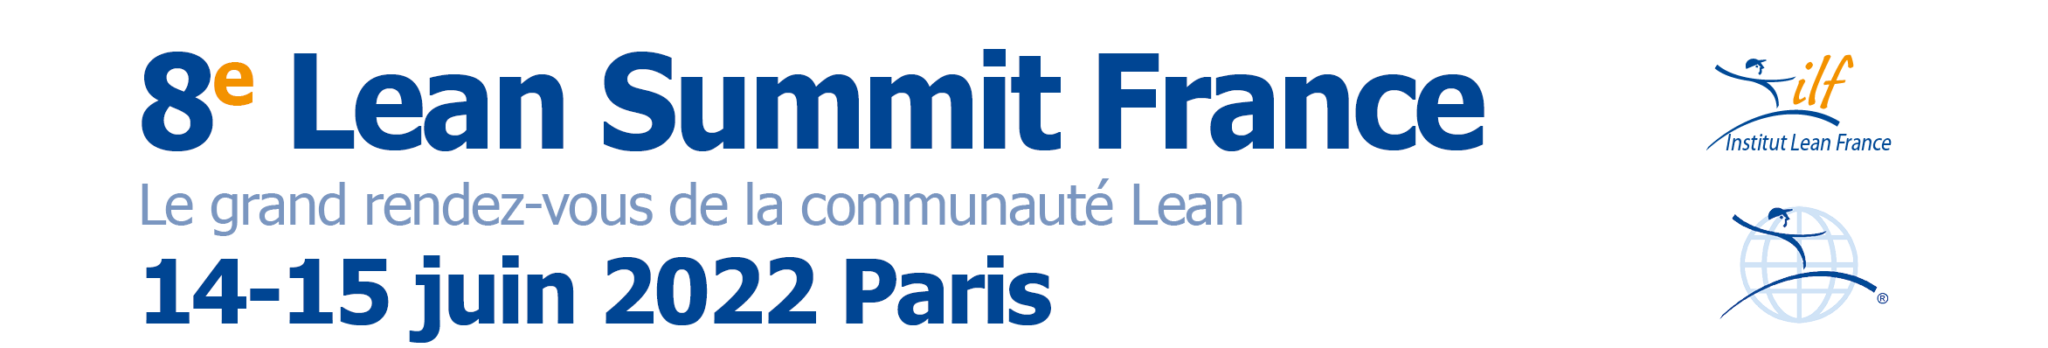 lean summit france